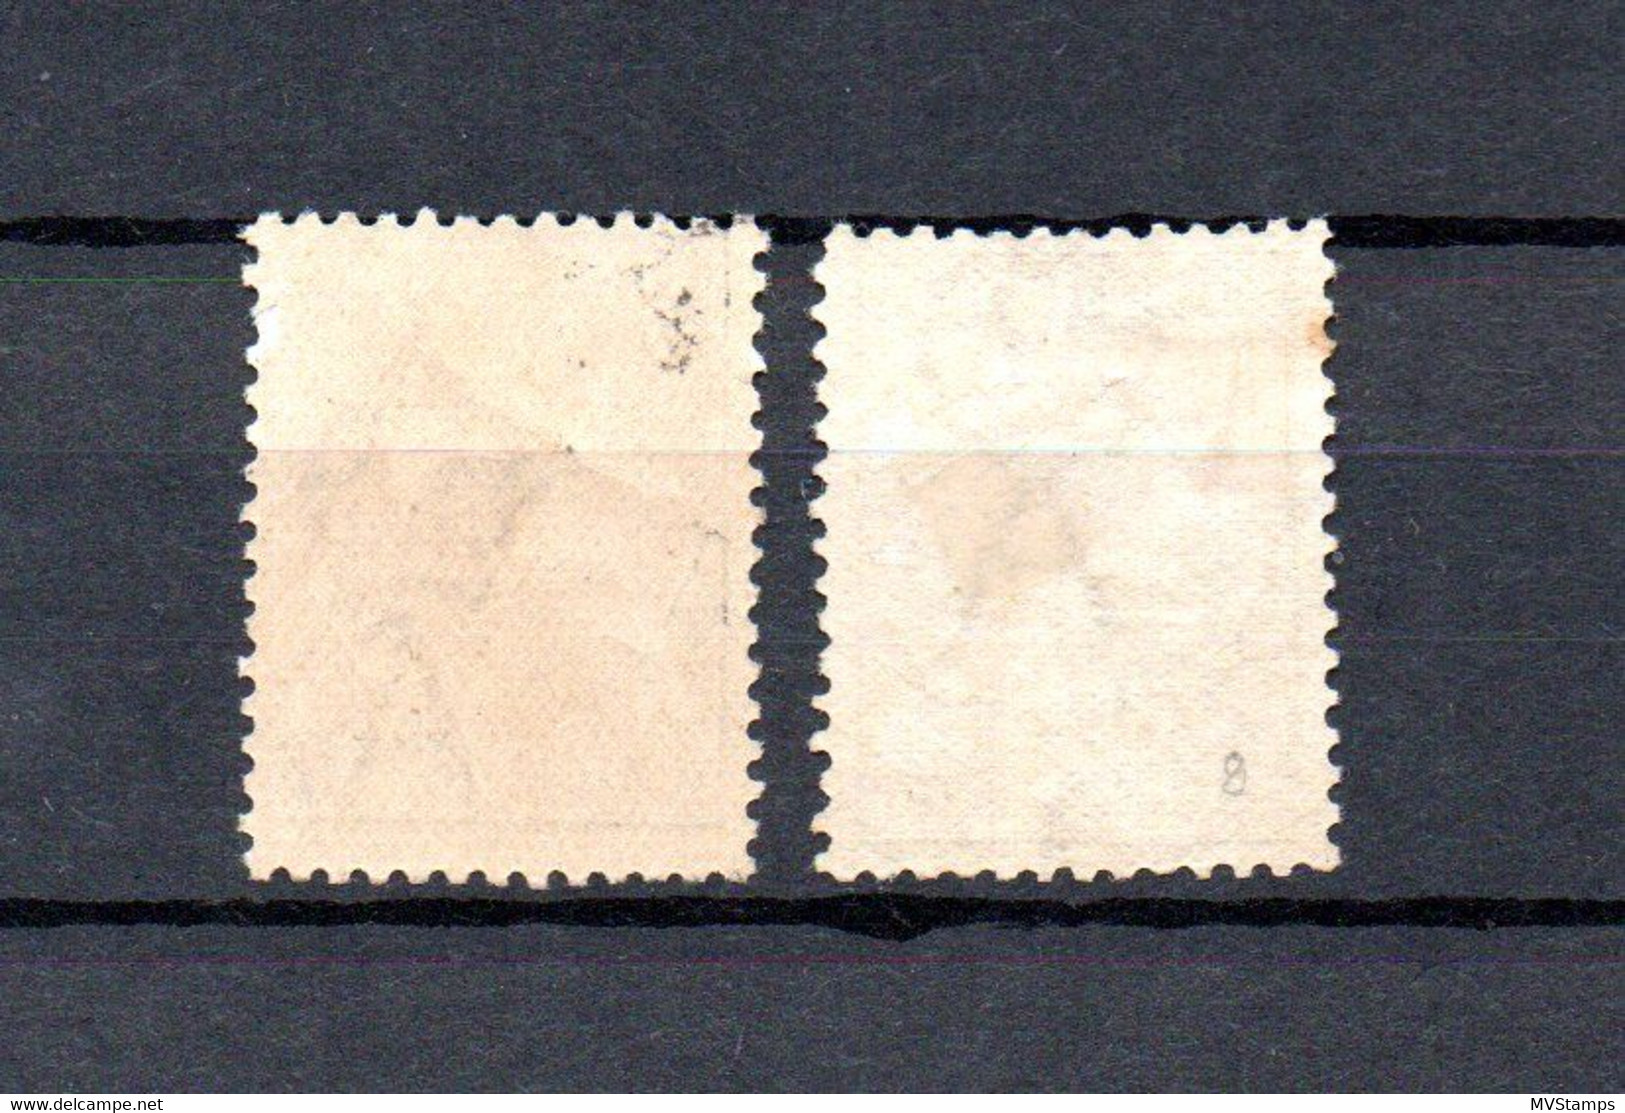 Australia 1913 Old Kangaroo Stamps (Michel 7/8) Nice Unused/MLH - Nuovi